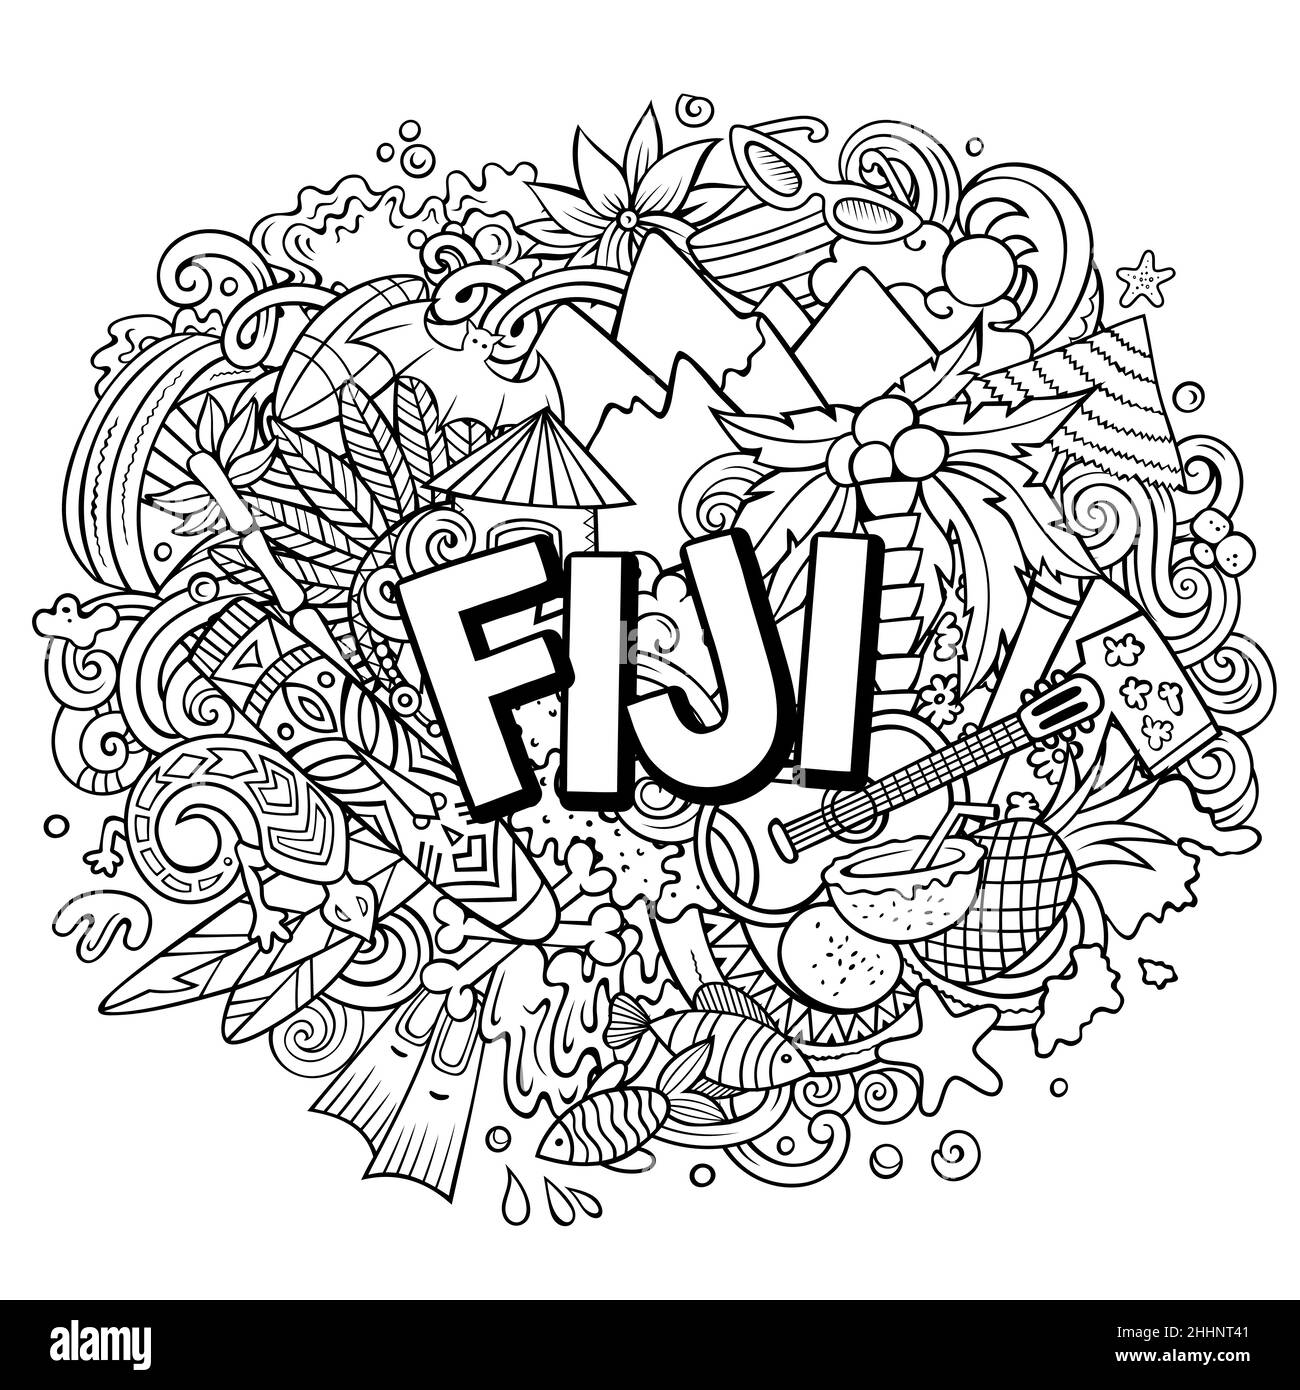 Fidschi handgezeichnete Cartoon-Kritzeleien Illustration. Witziges Reisedesign. Kreative Kunst Vektor Hintergrund. Handgeschriebener Text mit exotischen Inselelementen und Anhänger Stock Vektor